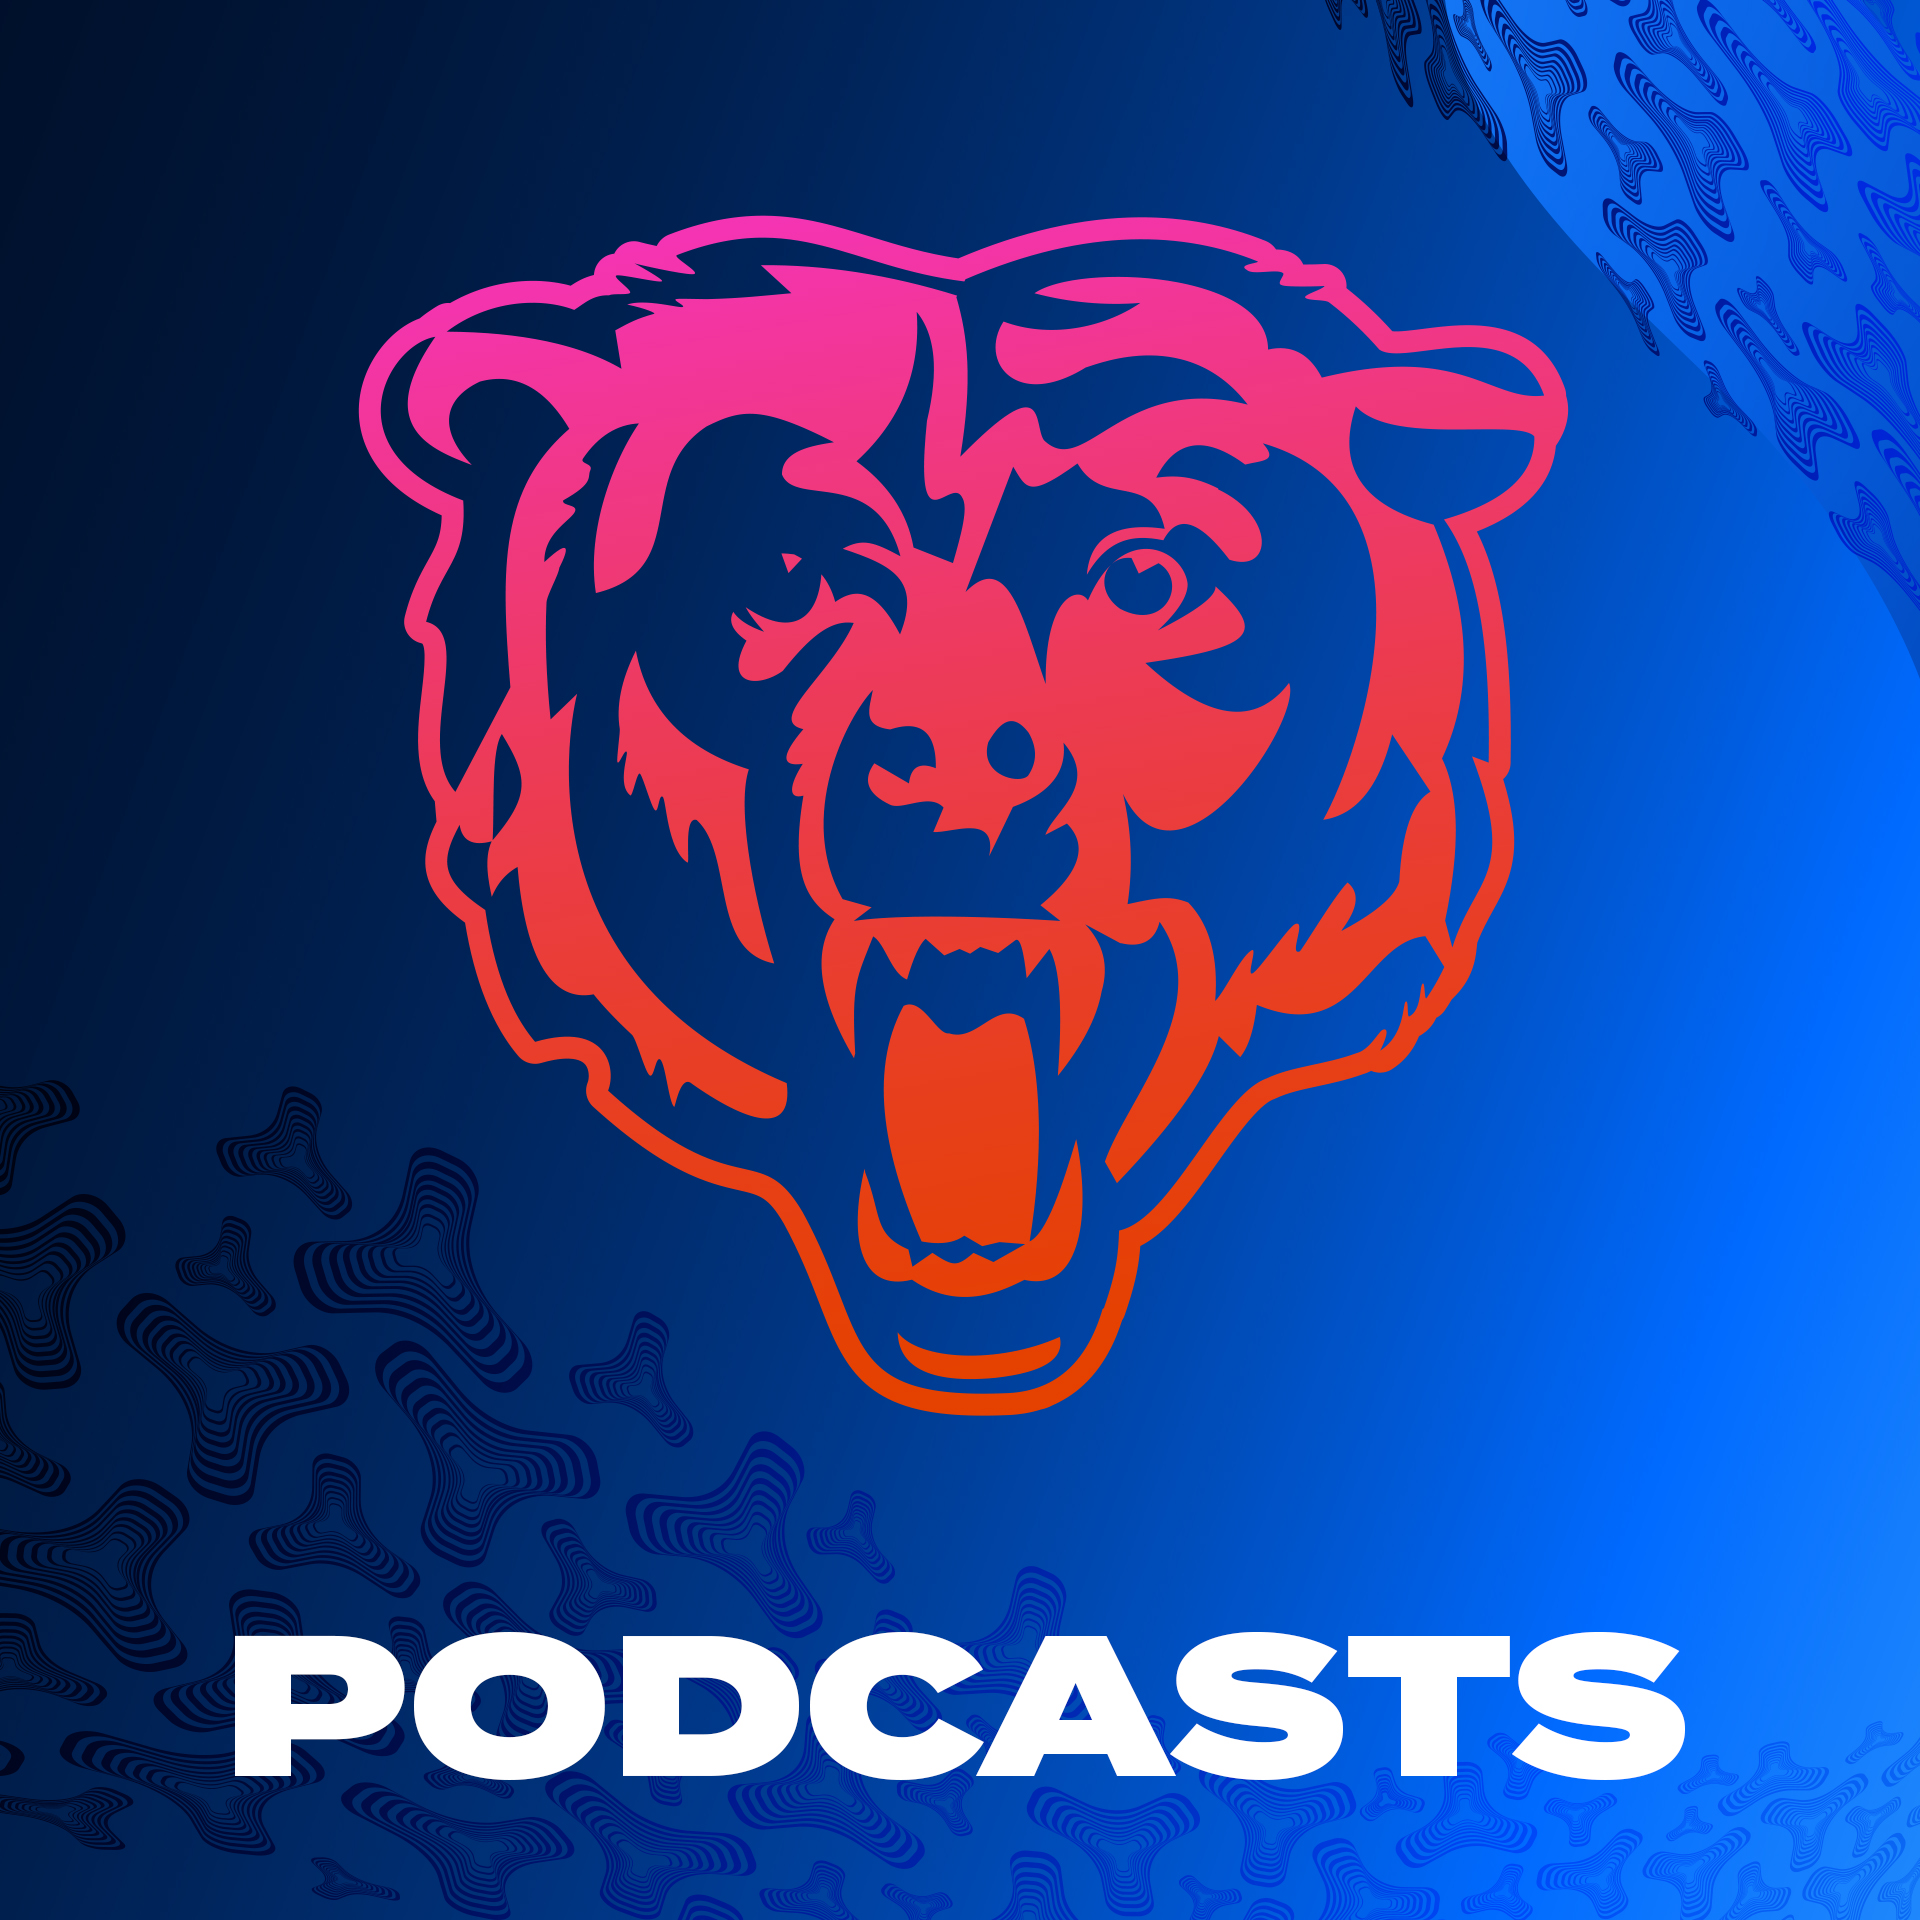 Former DL Henry Melton praises Bears defense | Bears, etc. Podcast